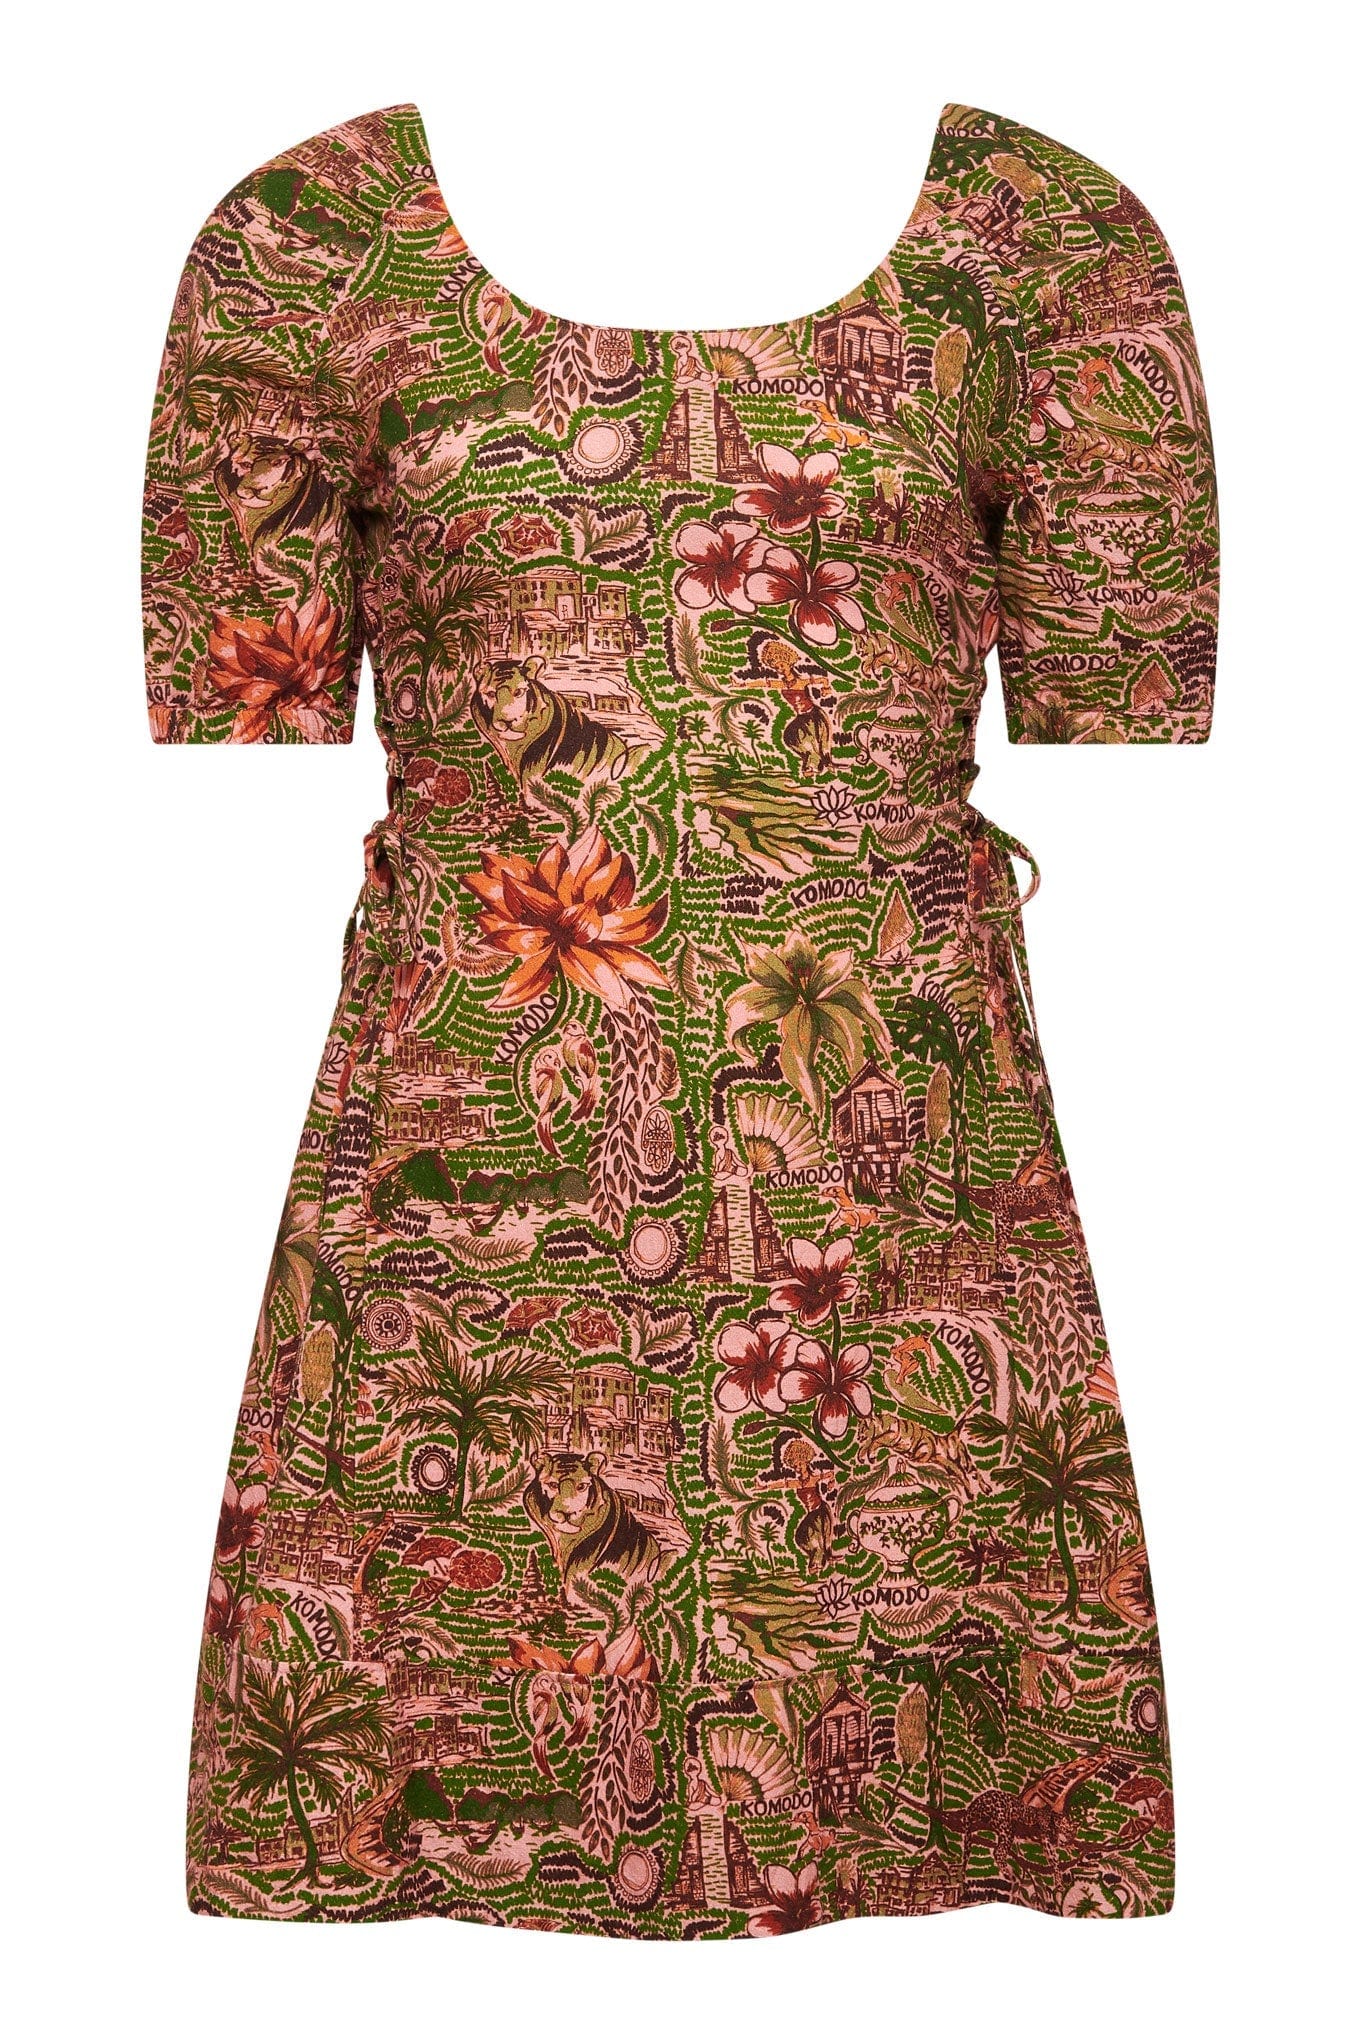 KOMODO BALI - Tropical Print Organic Cotton Dress Pink